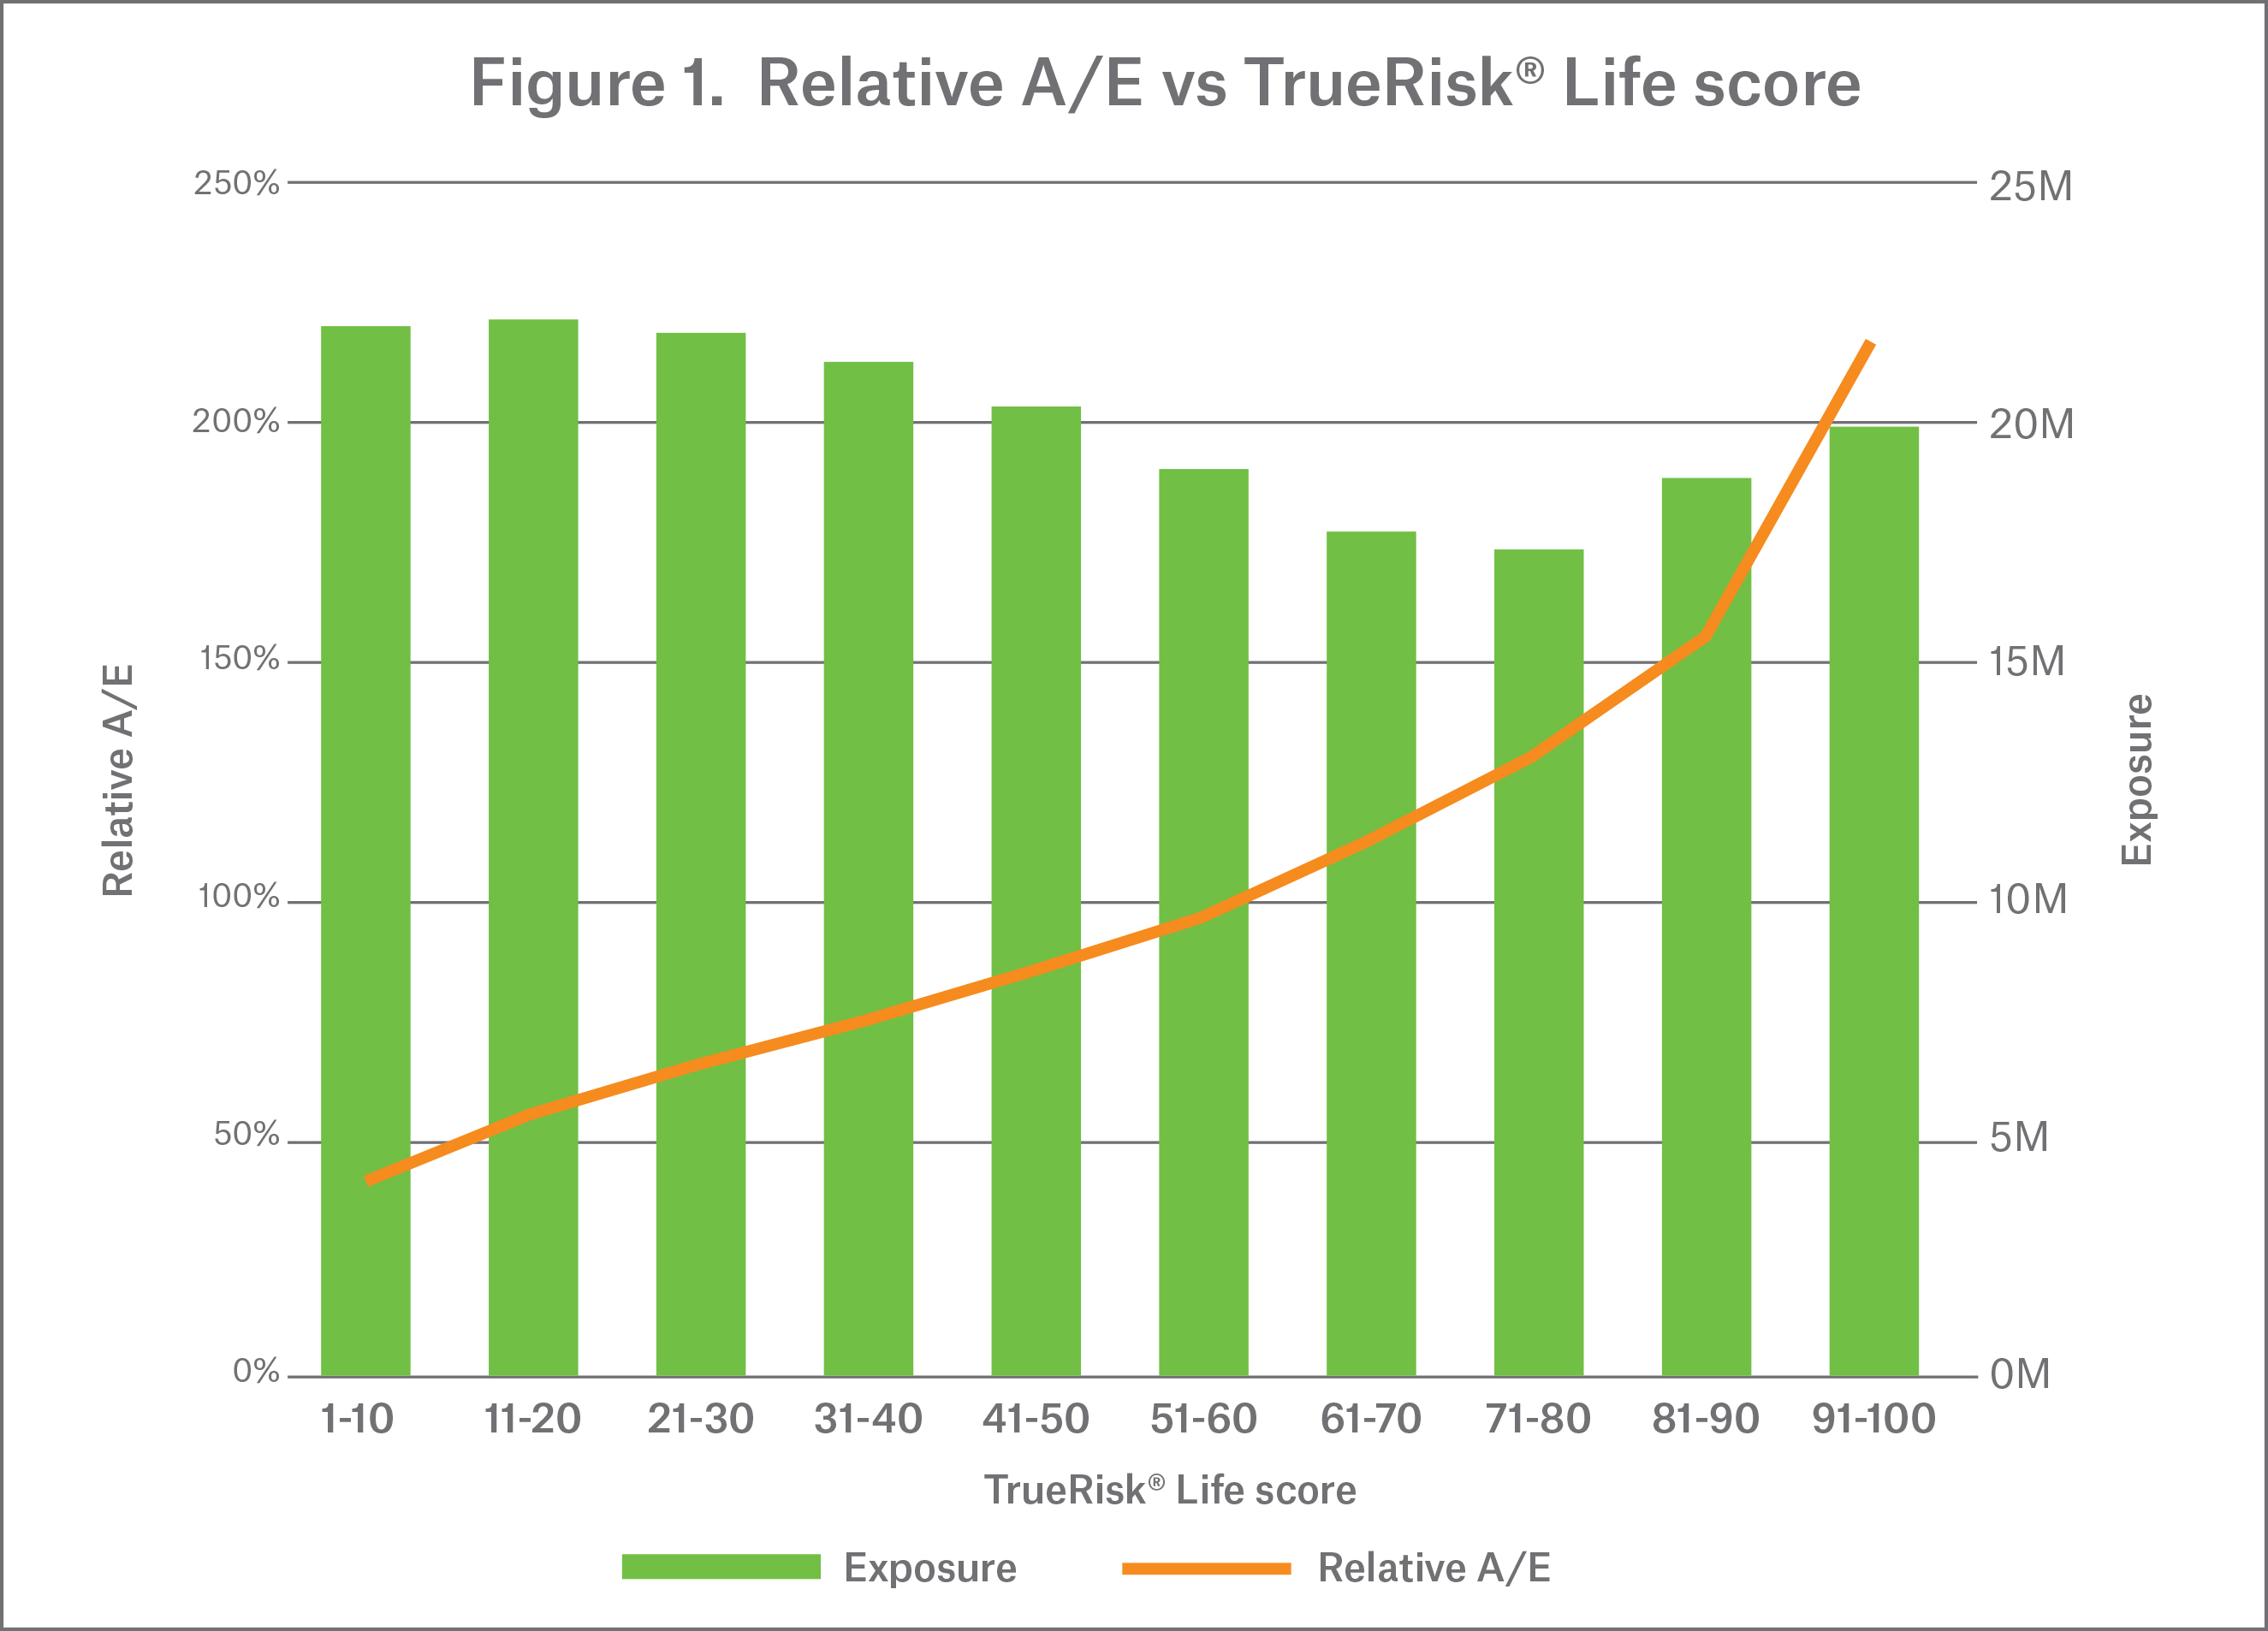 Figure 1 - Relative A/E vs TrueRisk Life score